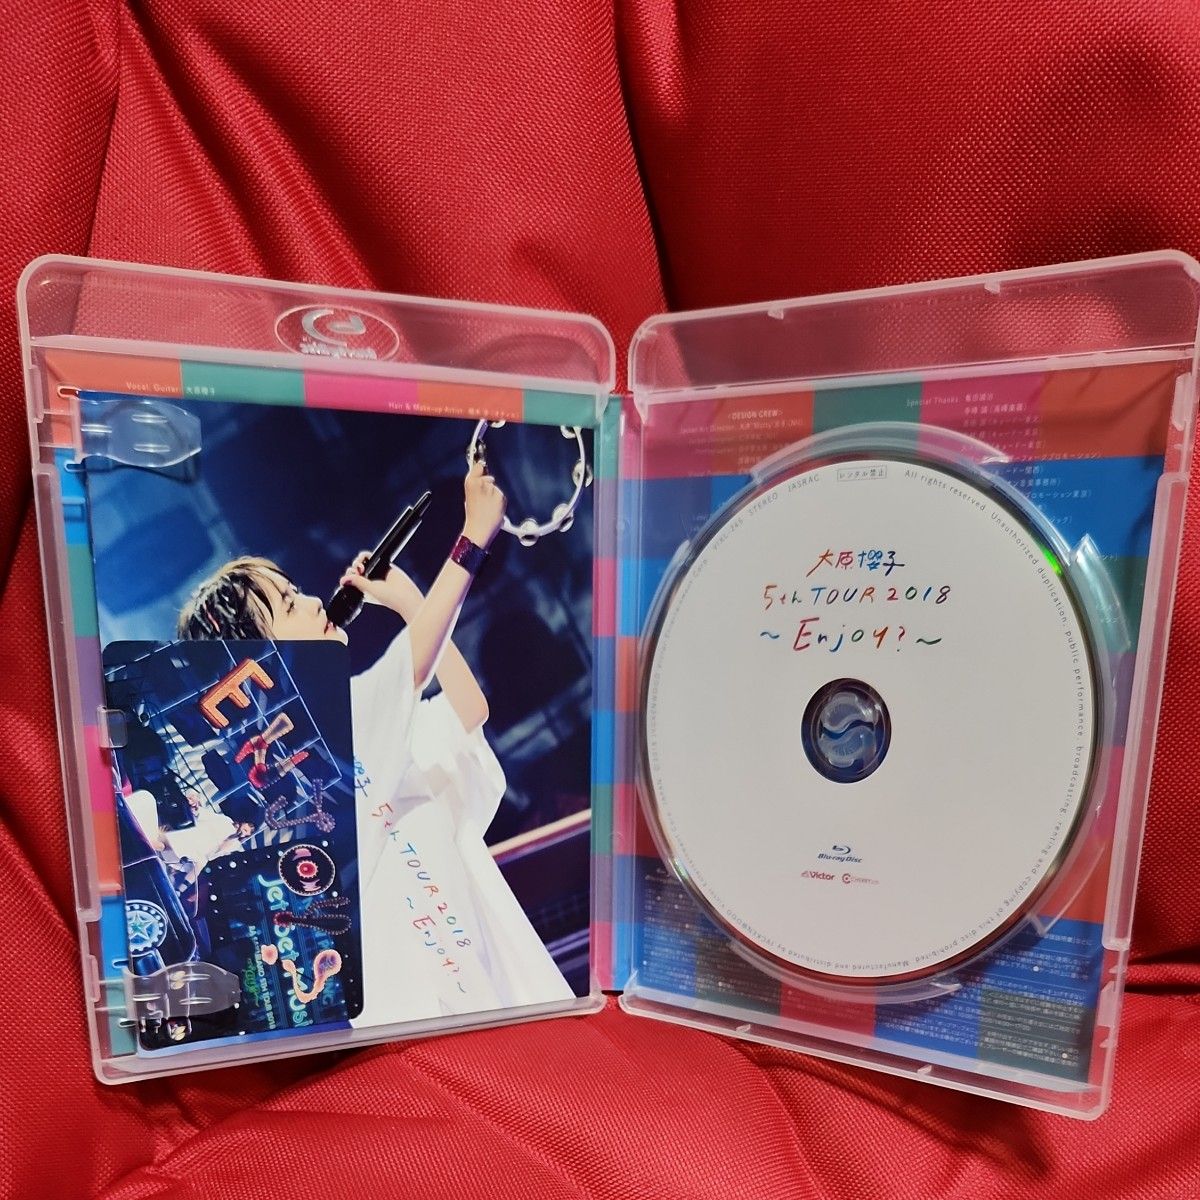 大原櫻子 Blu-ray/大原櫻子 5th TOUR 2018 〜Enjoy? 〜 18/11/21発売 オリコン加盟店